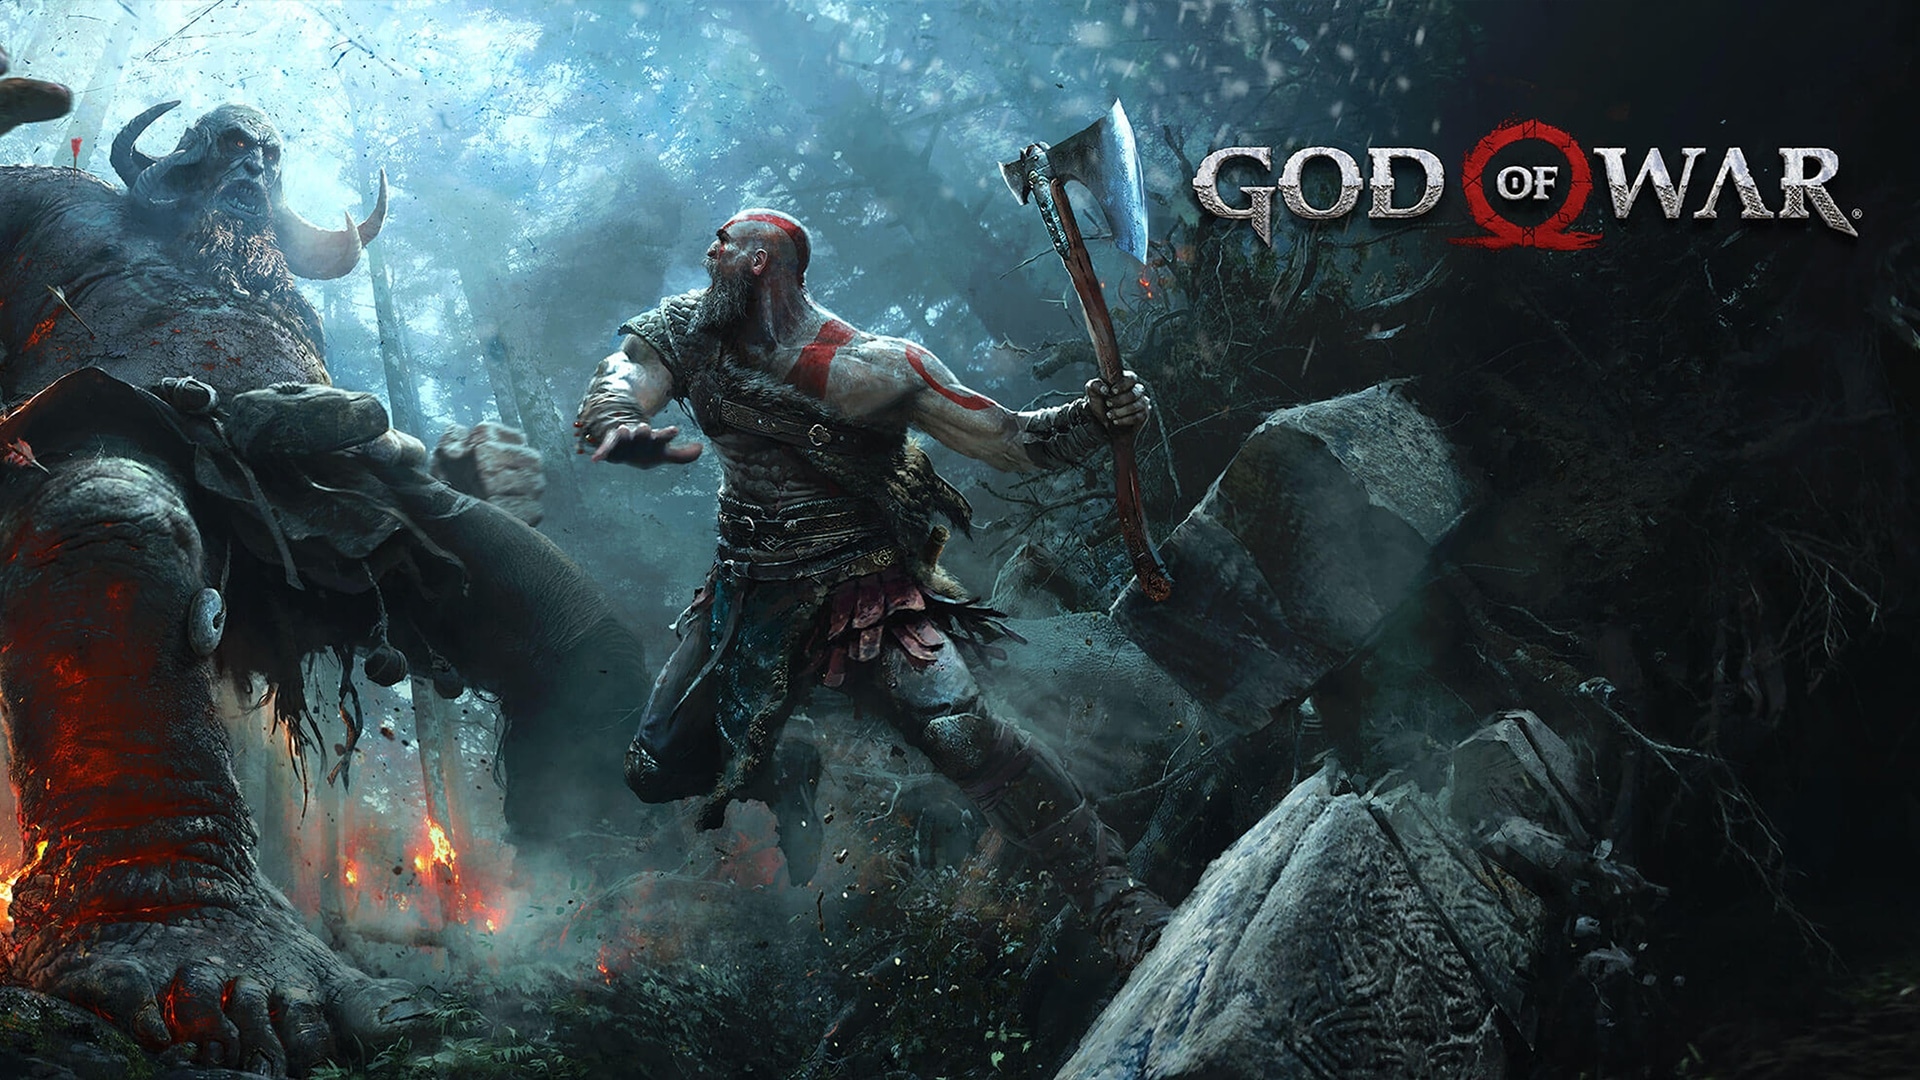 Kratos vs monster god of war 4 video game 28 4